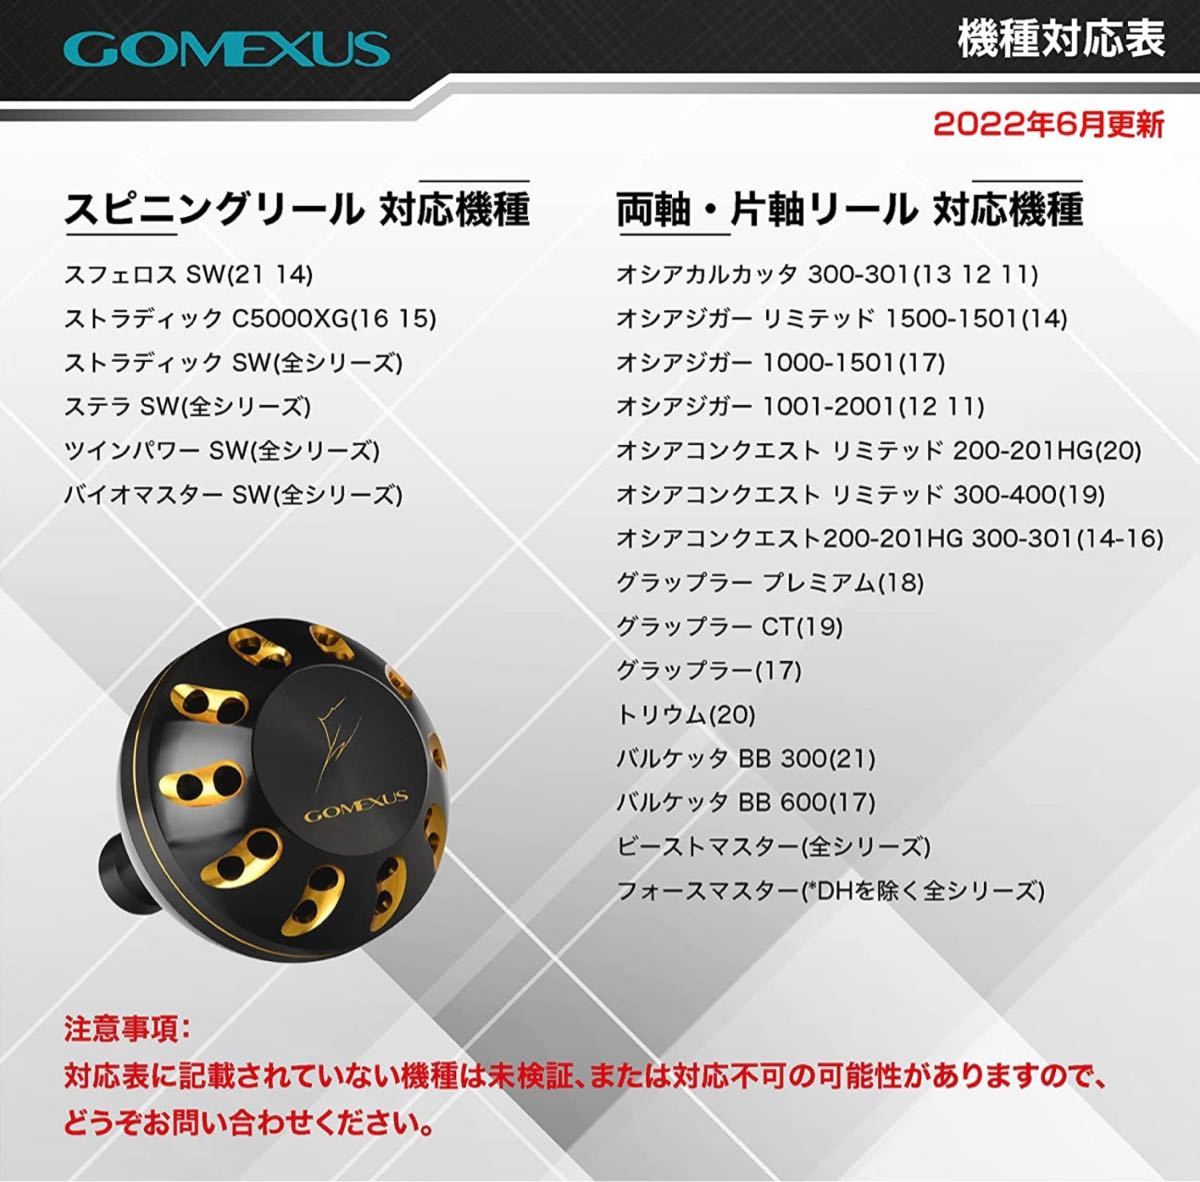 ゴメクサス 45mm ハンドルノブ シマノ ステラSW ツインパワーSW ゴールドブラックの画像3